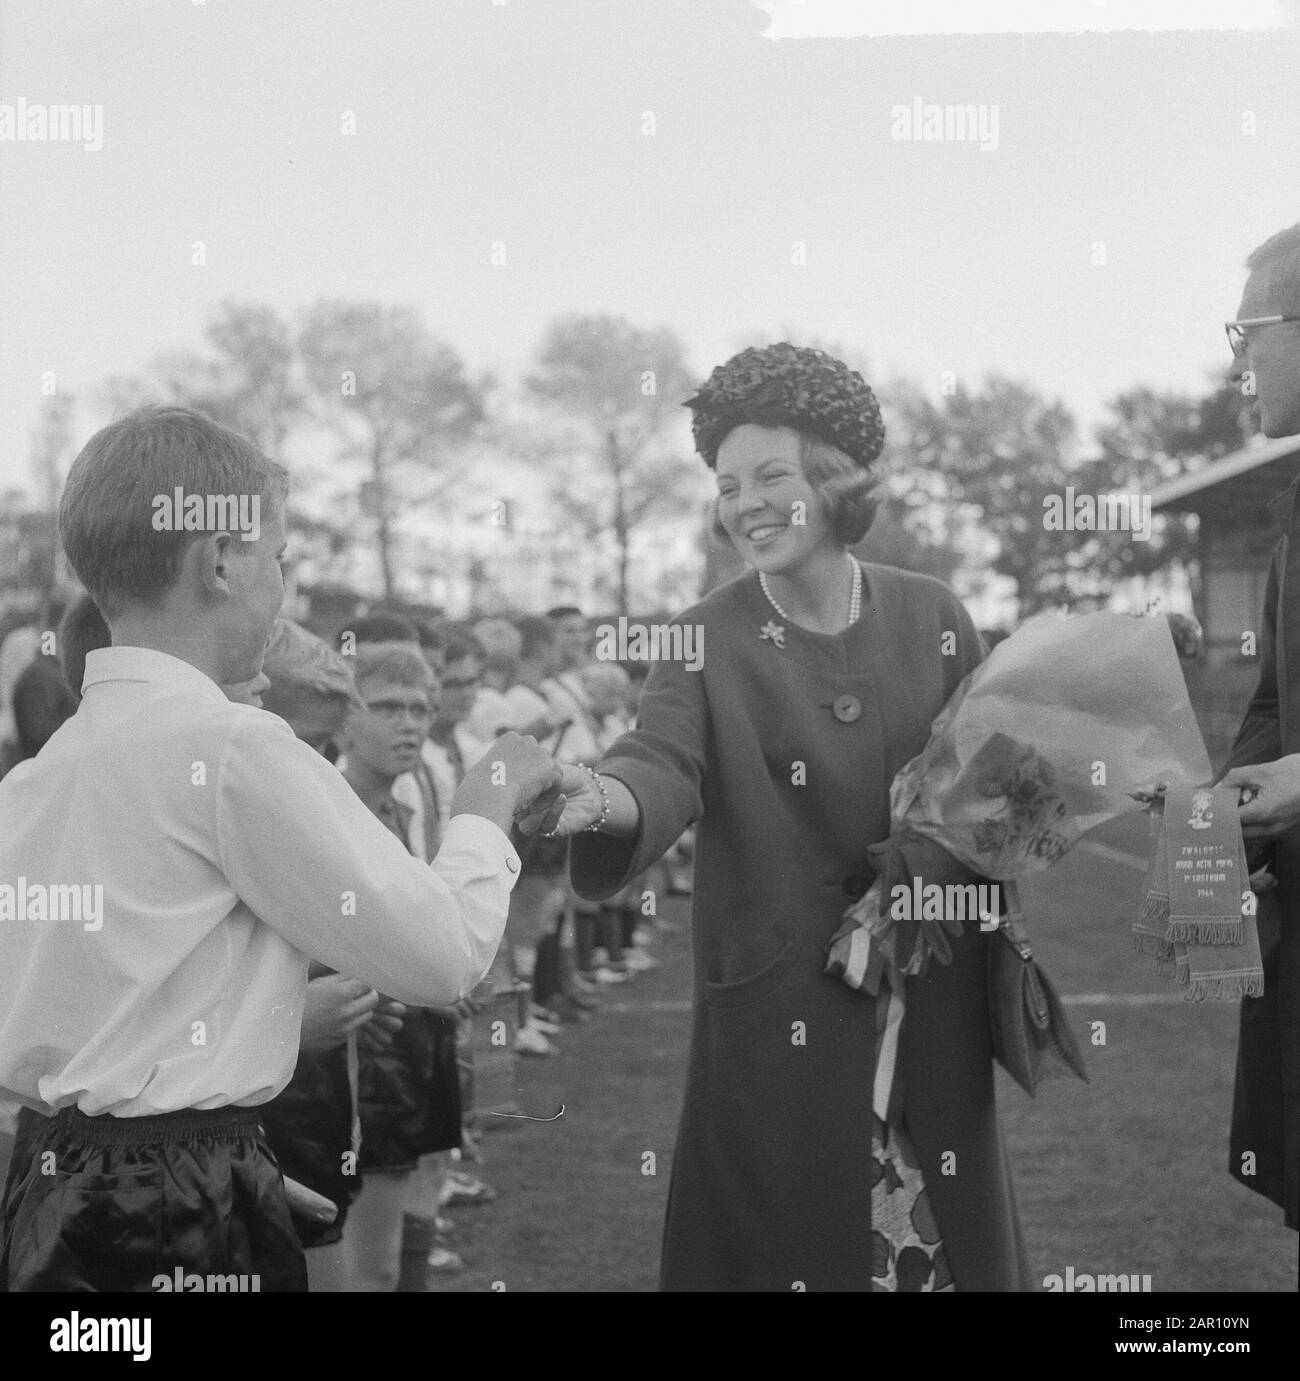 Prinzessin Beatrix besuchte den Abschlusstag von De Zwaluwen, Jugendaktion Polio in den Haag, Prinzessin Beatrix vergibt Medaillen ab Datum: 3. Oktober 1964 Ort: Den Haag, Zuid-Holland Schlüsselwörter: JUGENDAKTIONEN, Besuche, Prinzessinnen persönlicher Name: Beatrix (Prinzessin Niederlande) Stockfoto